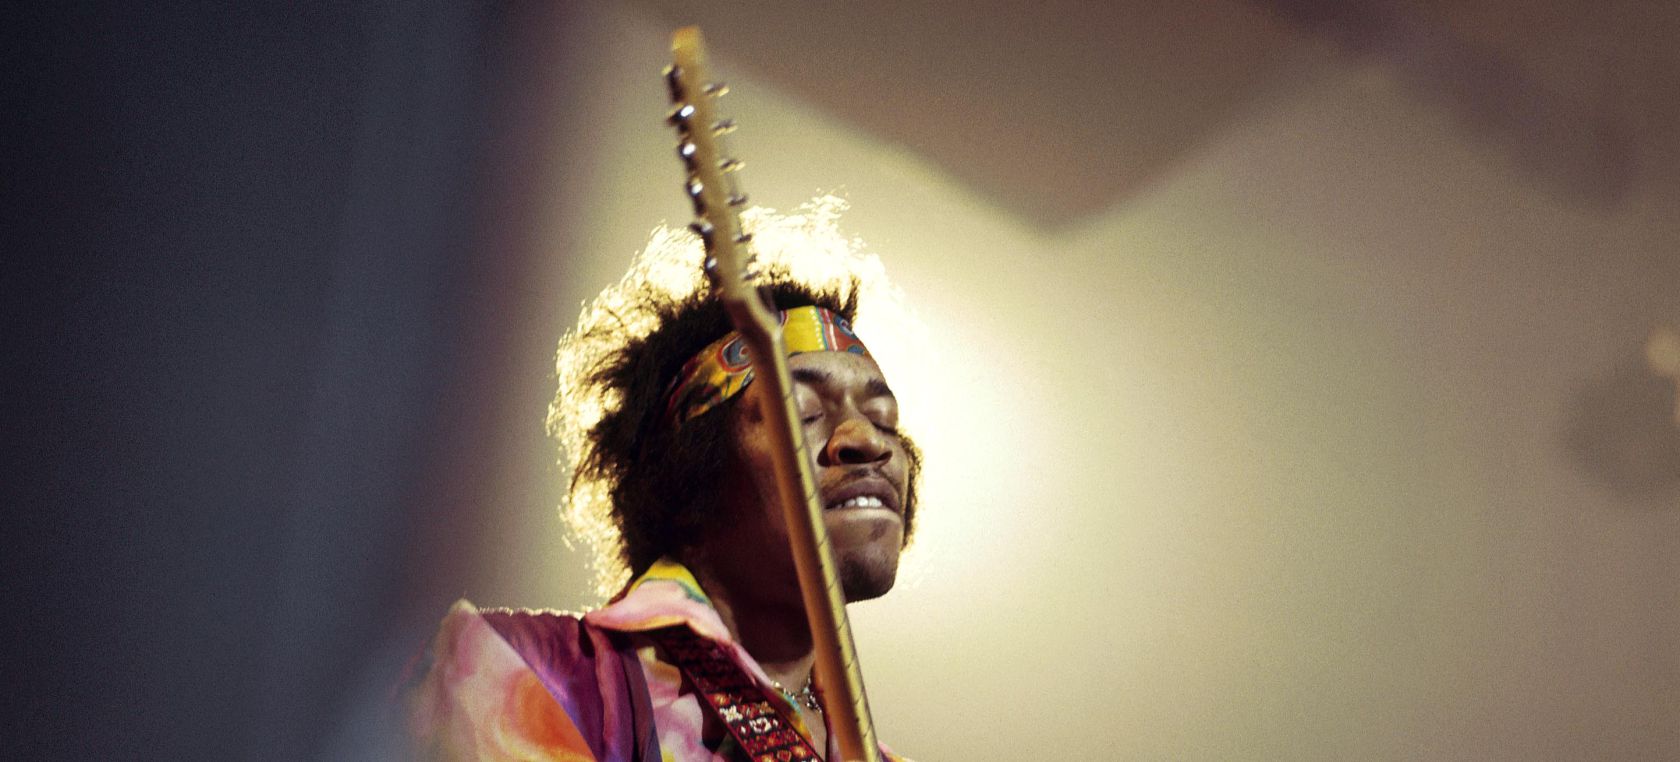 Las desgarradoras últimas palabras que pronunció Jimi Hendrix antes de morir